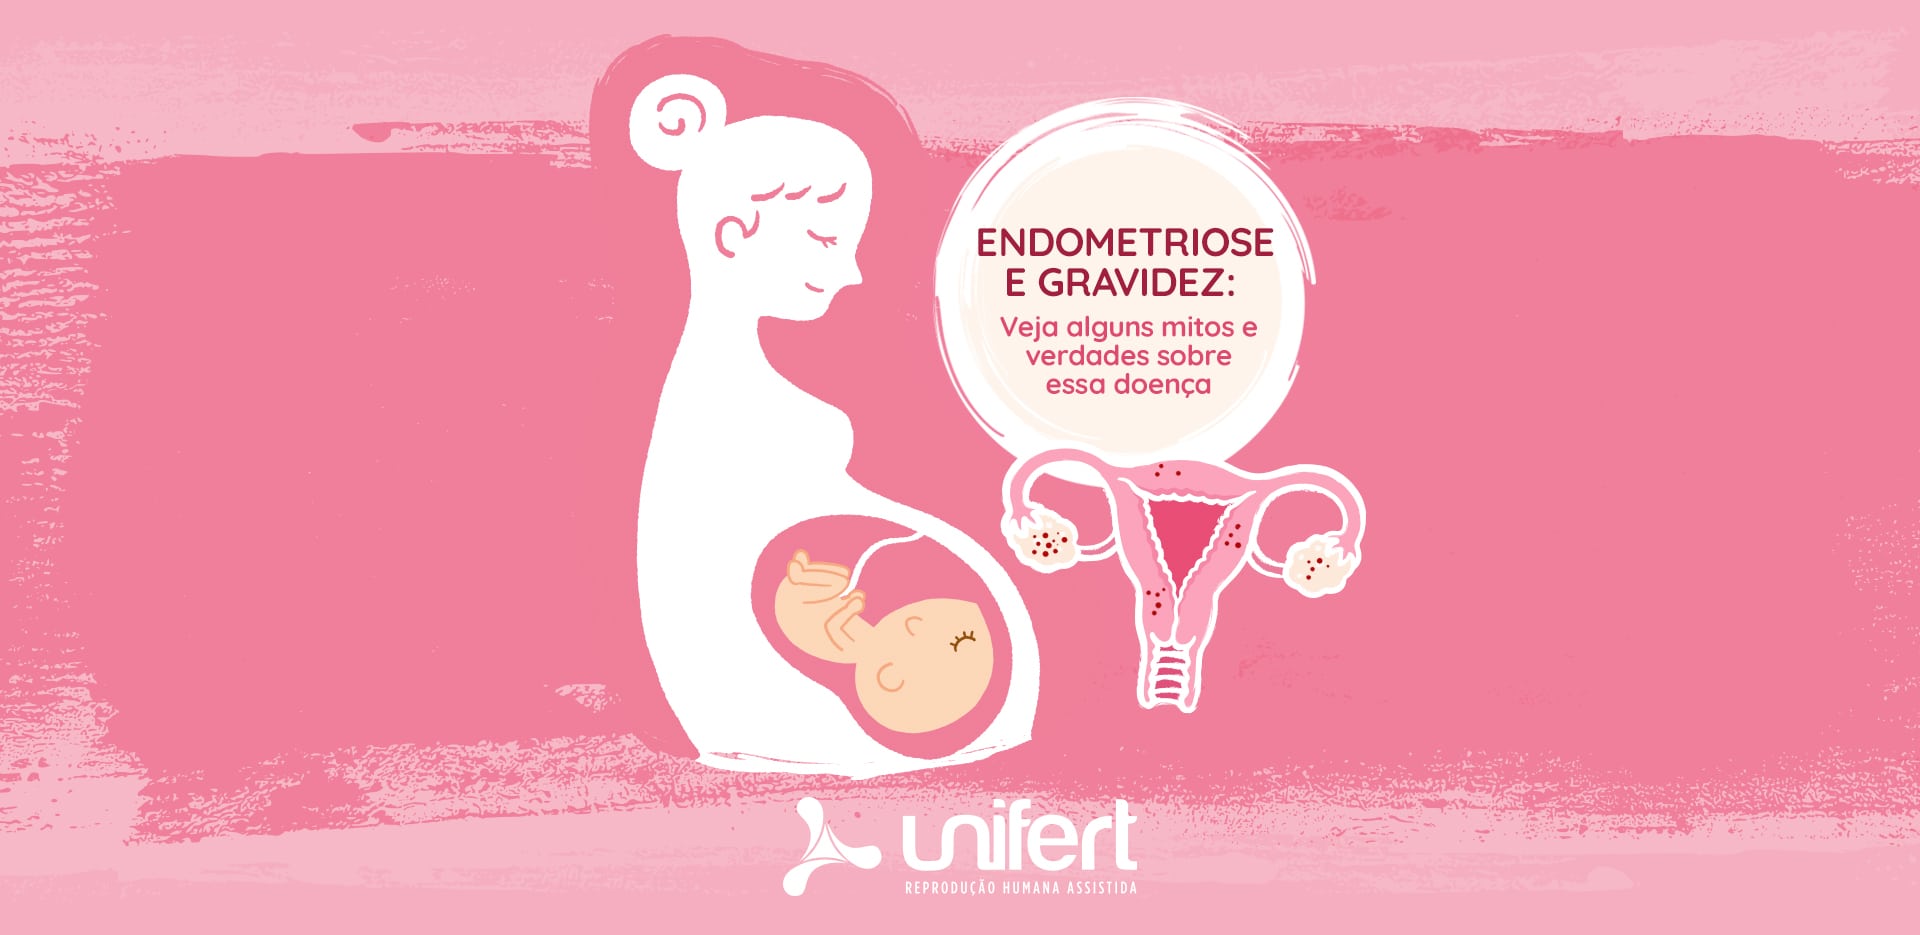 Endometriose e gravidez: veja alguns mitos e verdades sobre essa doença